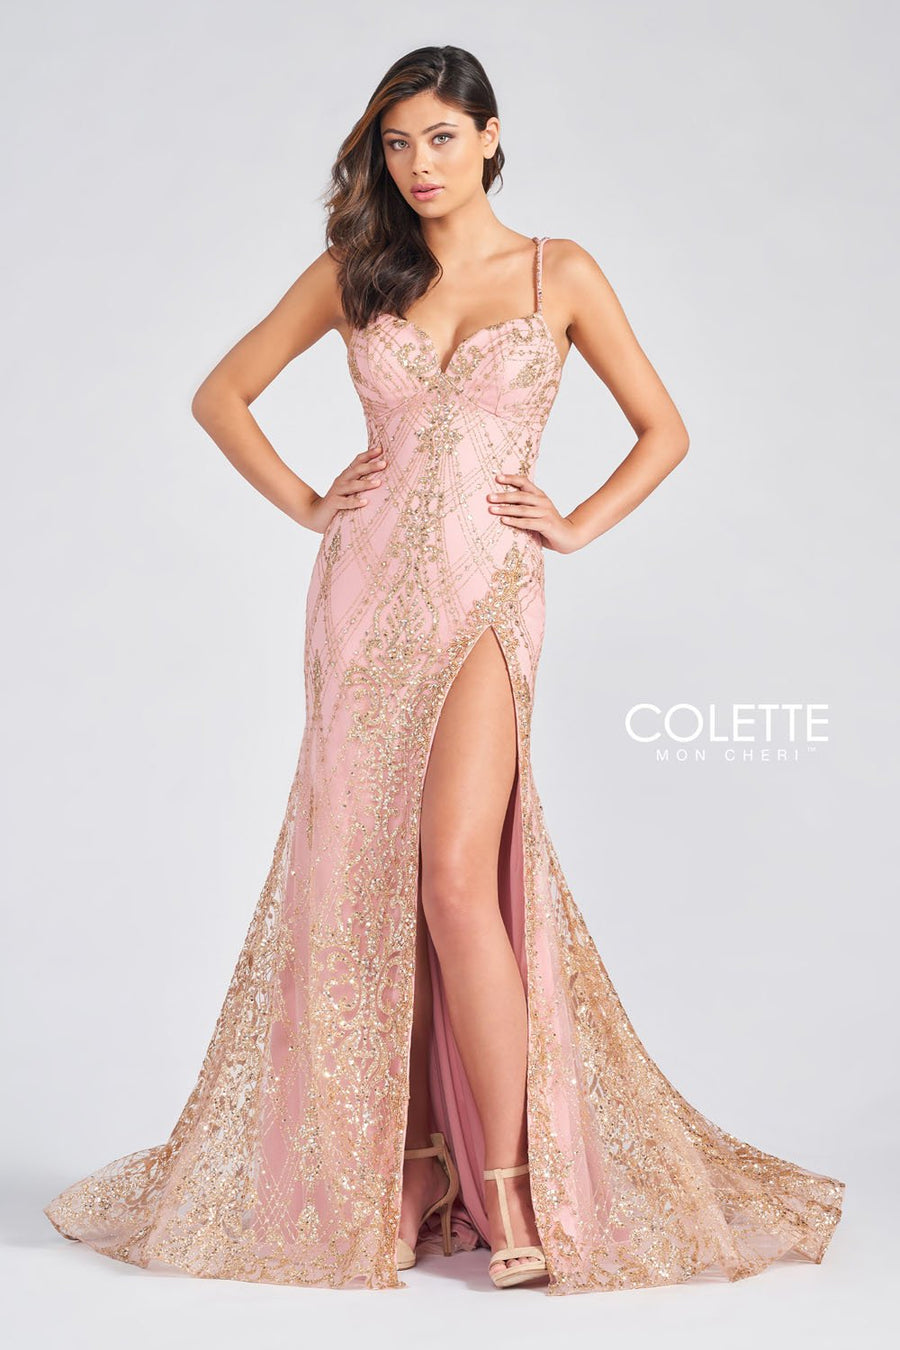 Colette CL12278 Dresses